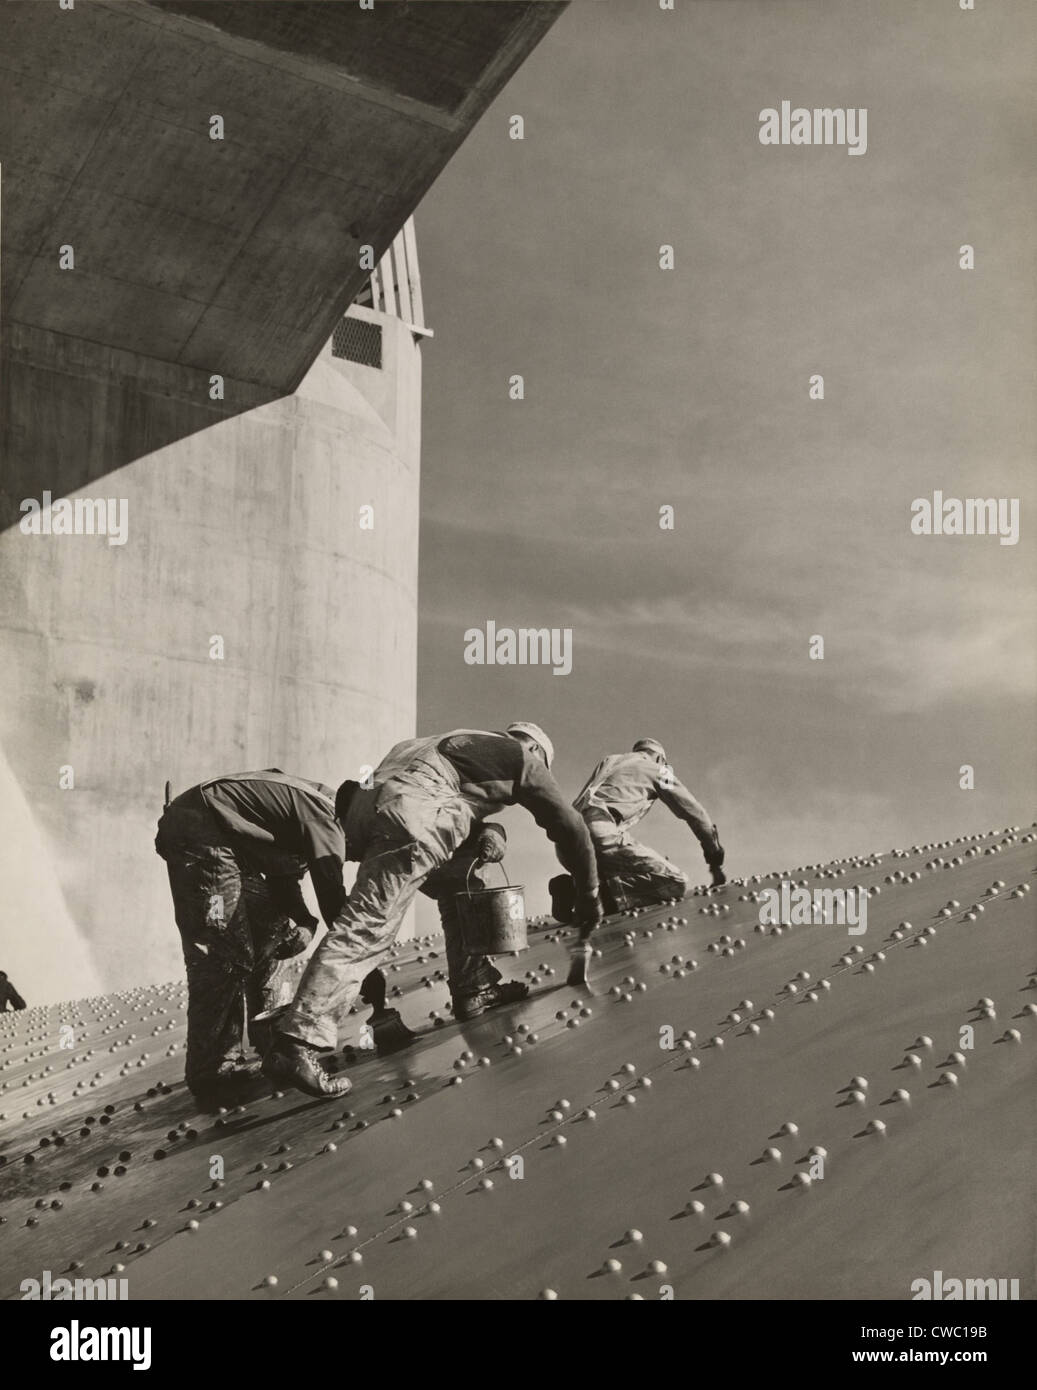 Drei Arbeiter an einer schrägen Wand genietet-Stahlplatten auf den Hoover-Staudamm Hochwasserentlastung Malerei. Ca. 1940. Stockfoto